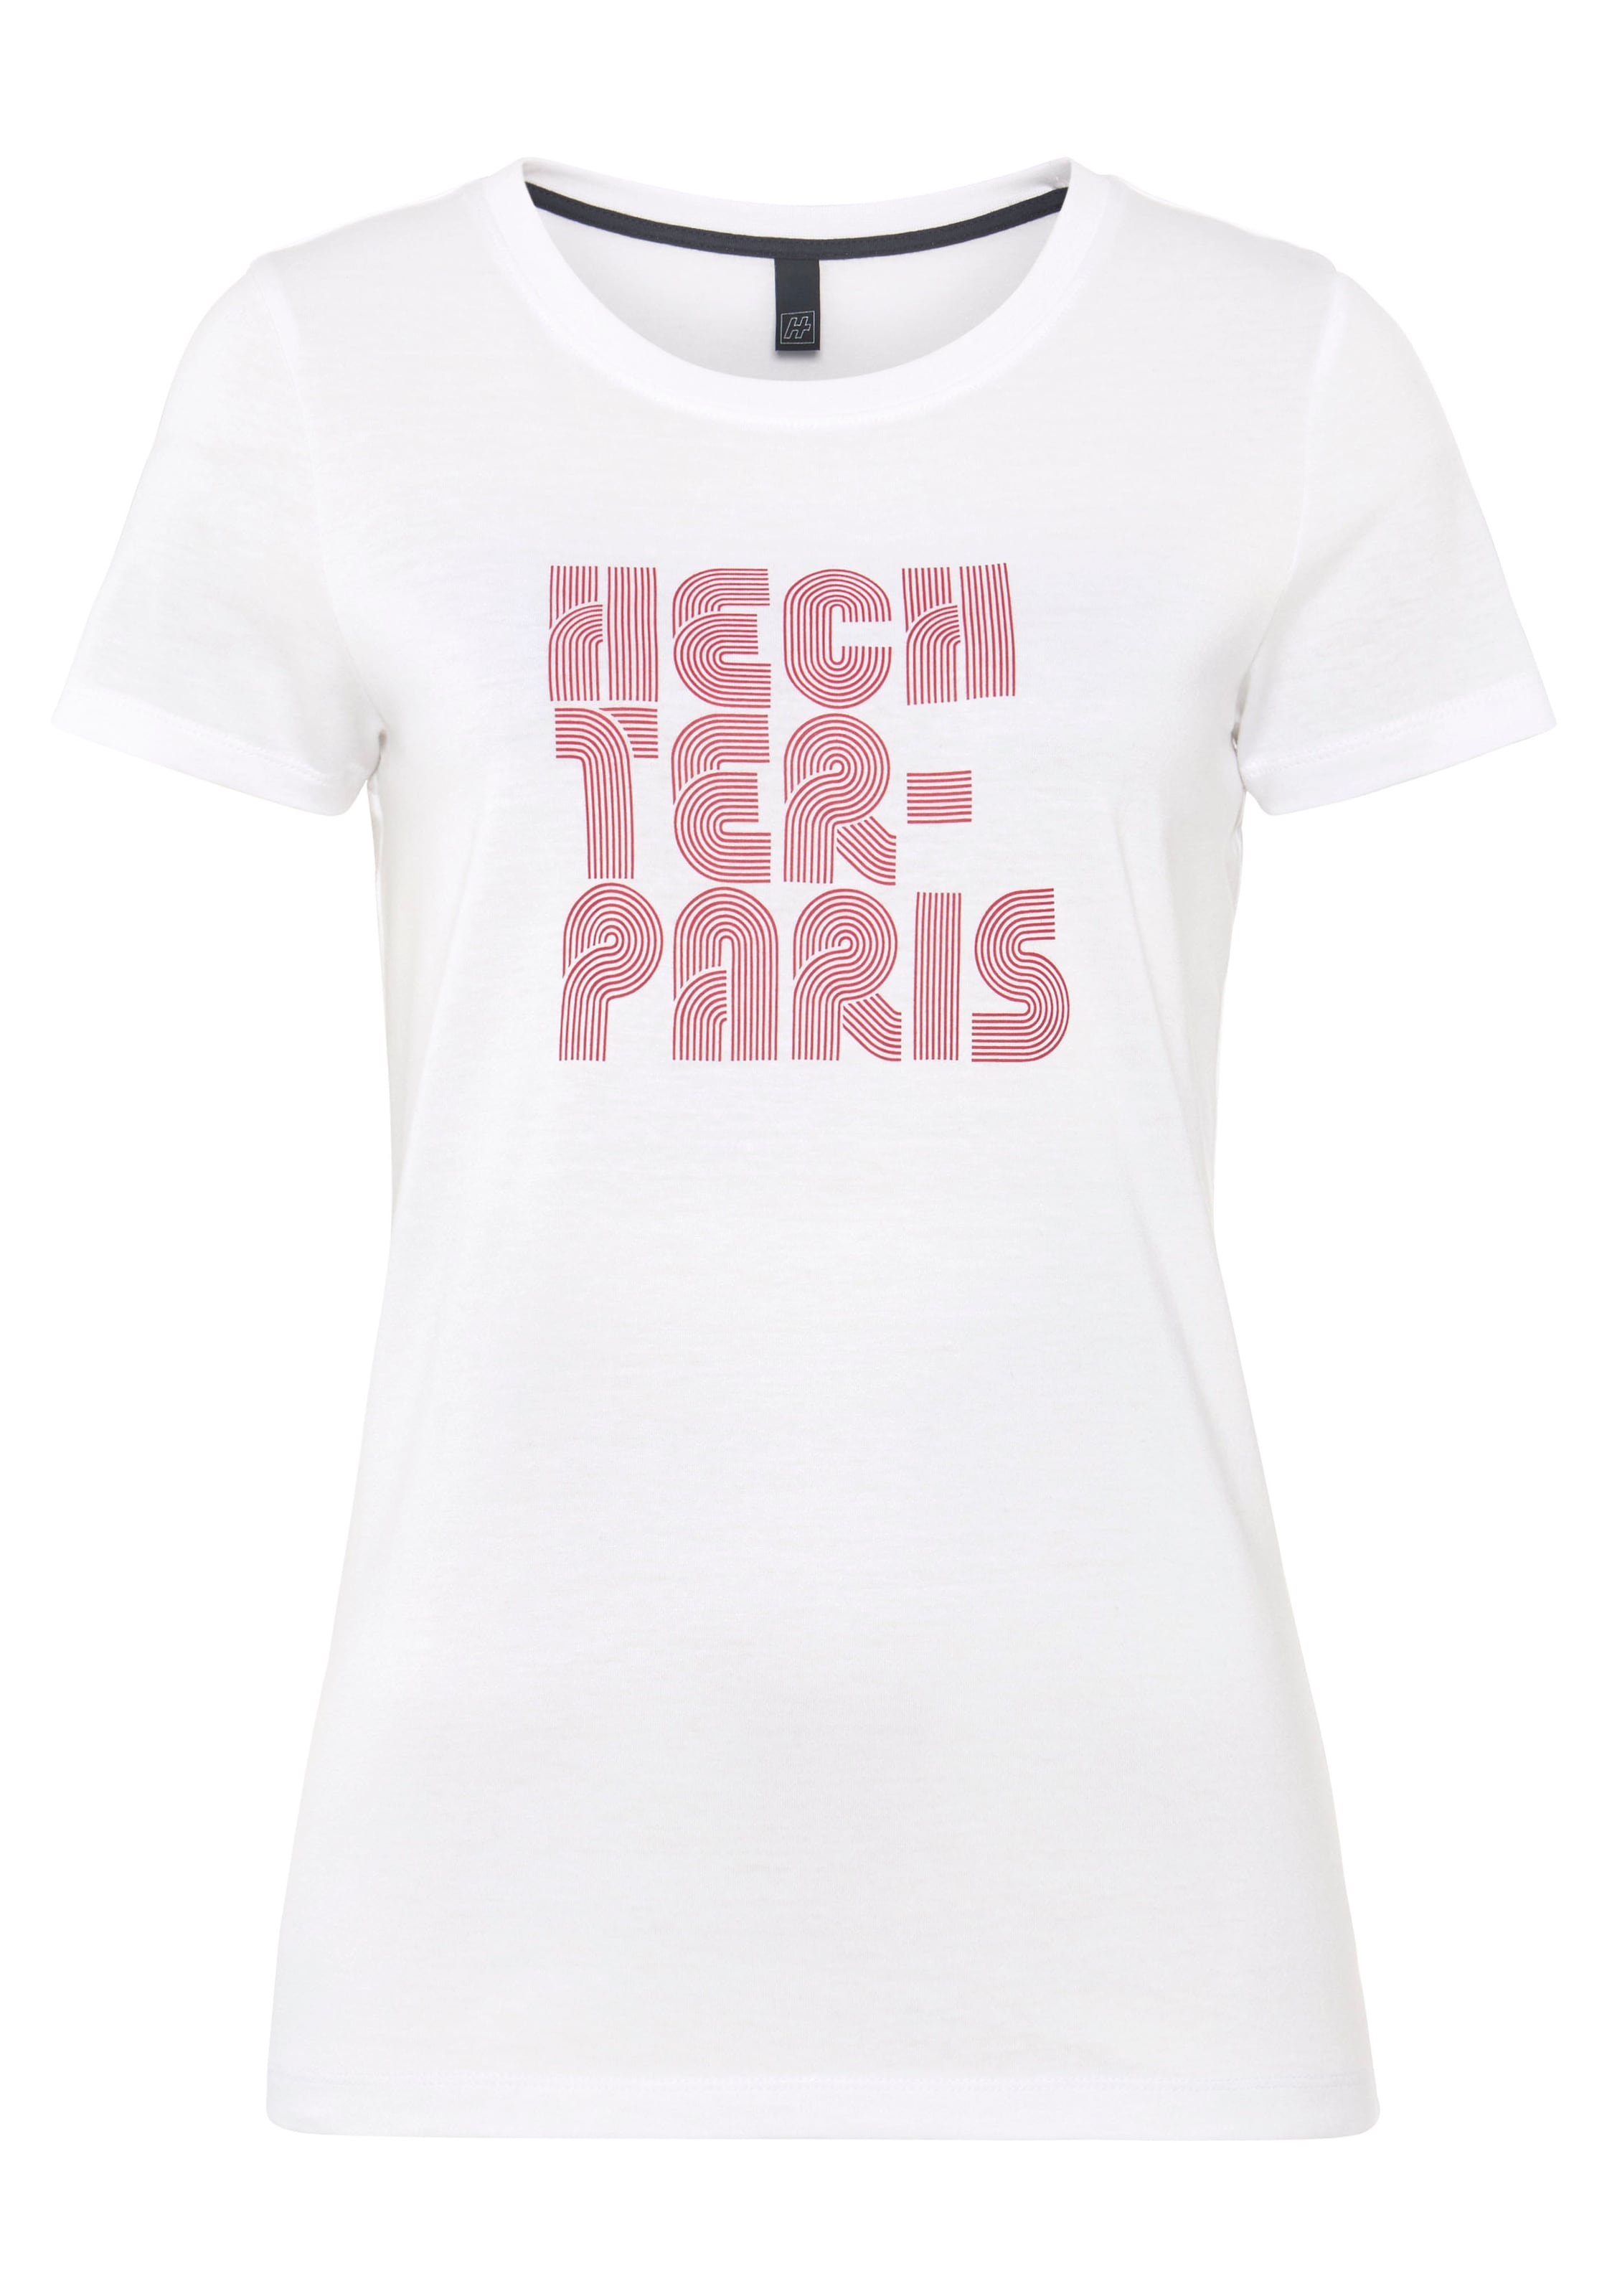 HECHTER PARIS T-Shirt, mit Druck kaufen | I'm walking